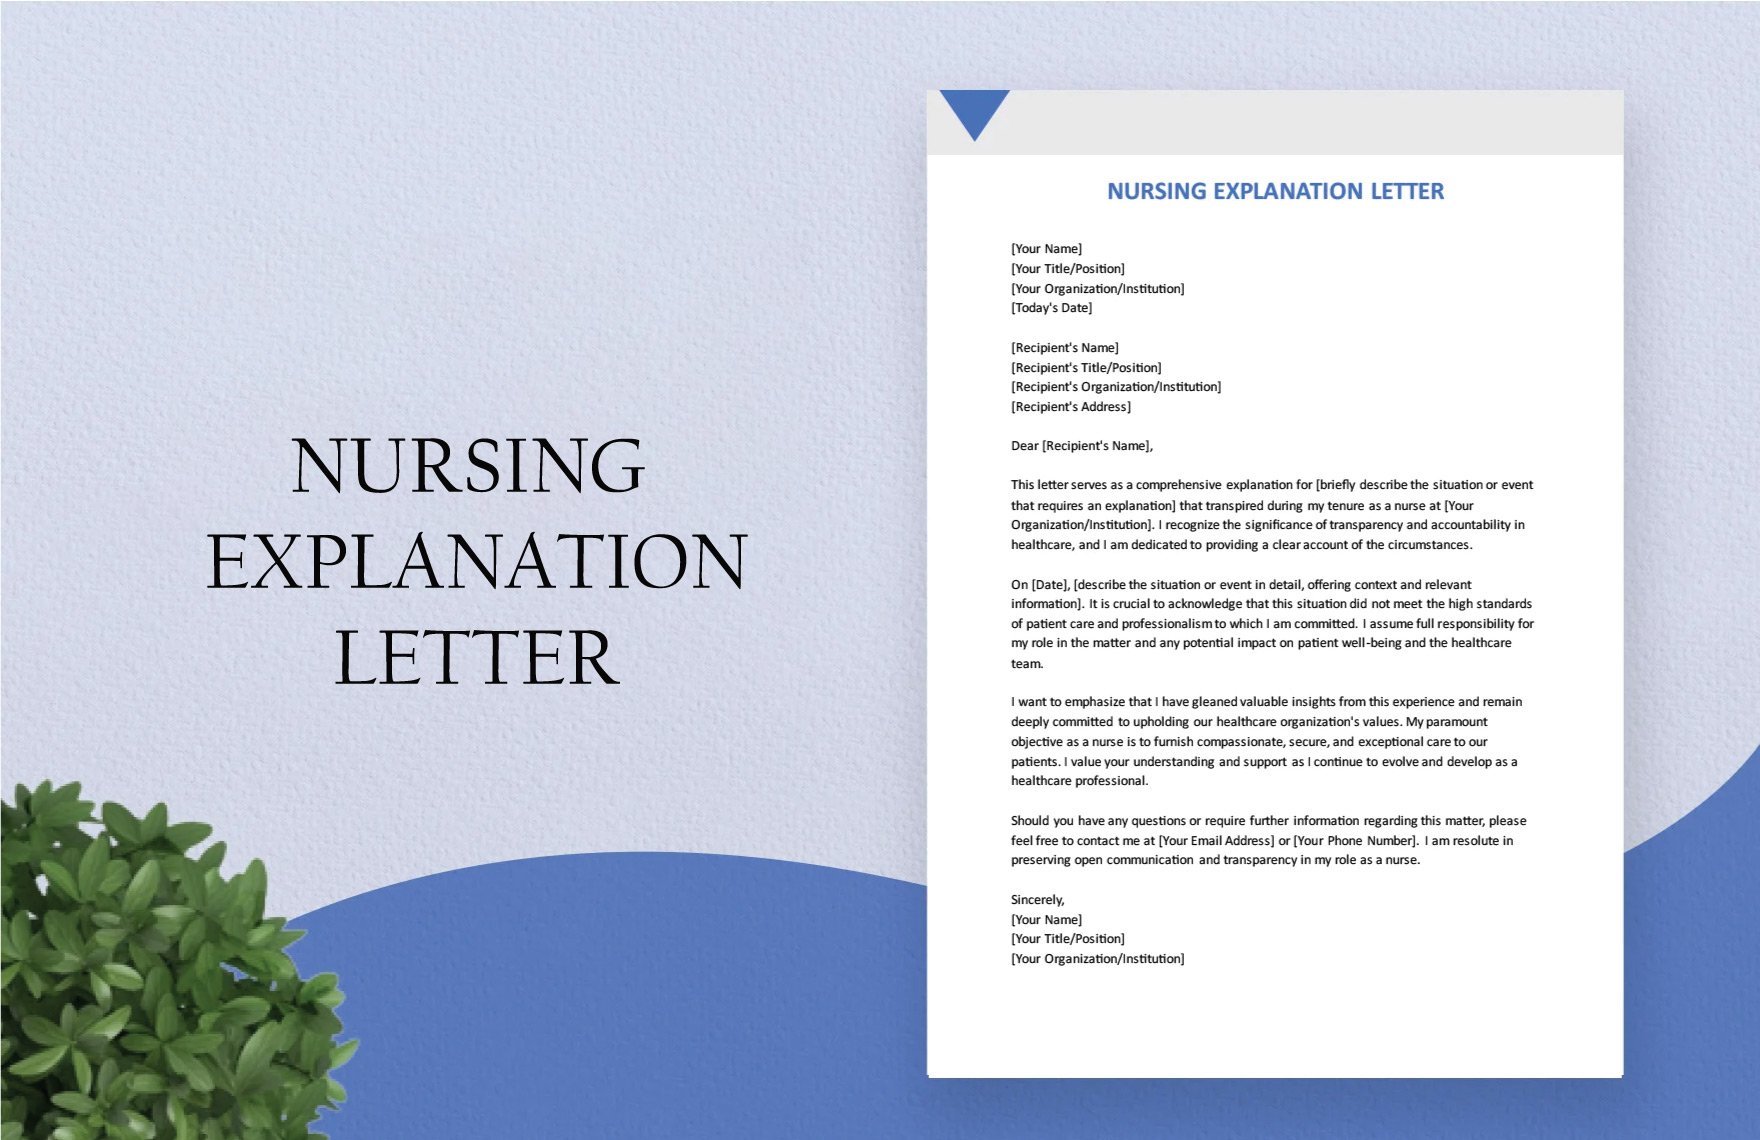 Nursing Explanation Letter in Word, Google Docs, PDF